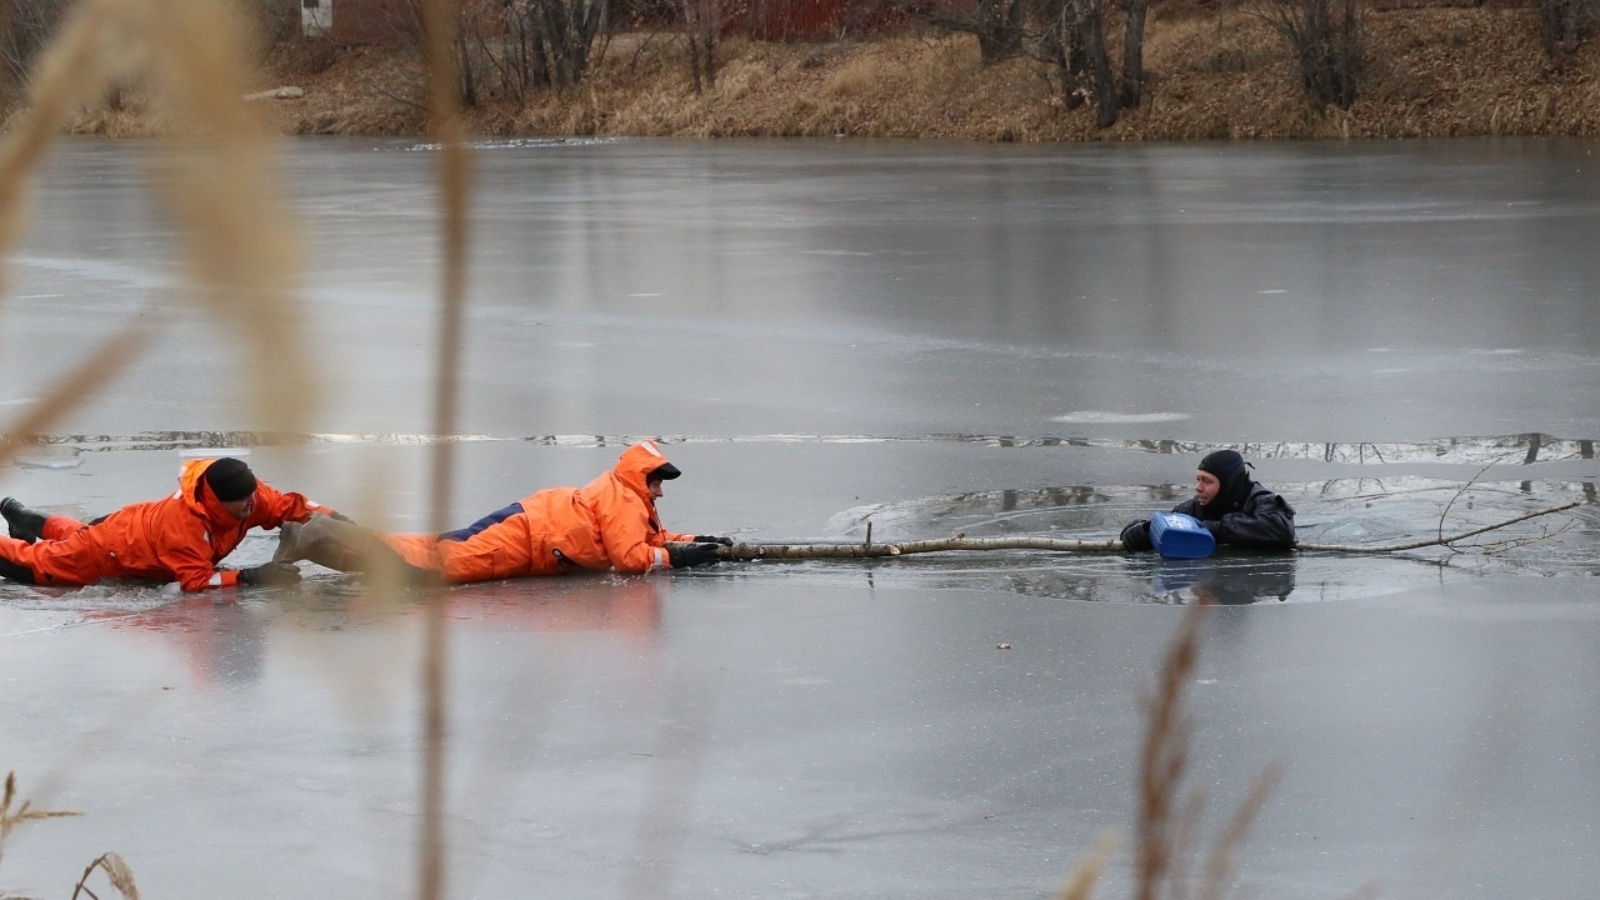 Случай спасения человека. МЧС России спасение детей на льду. Спасение человека провалившегося под лед. МЧС спасает провалившегося под лед.